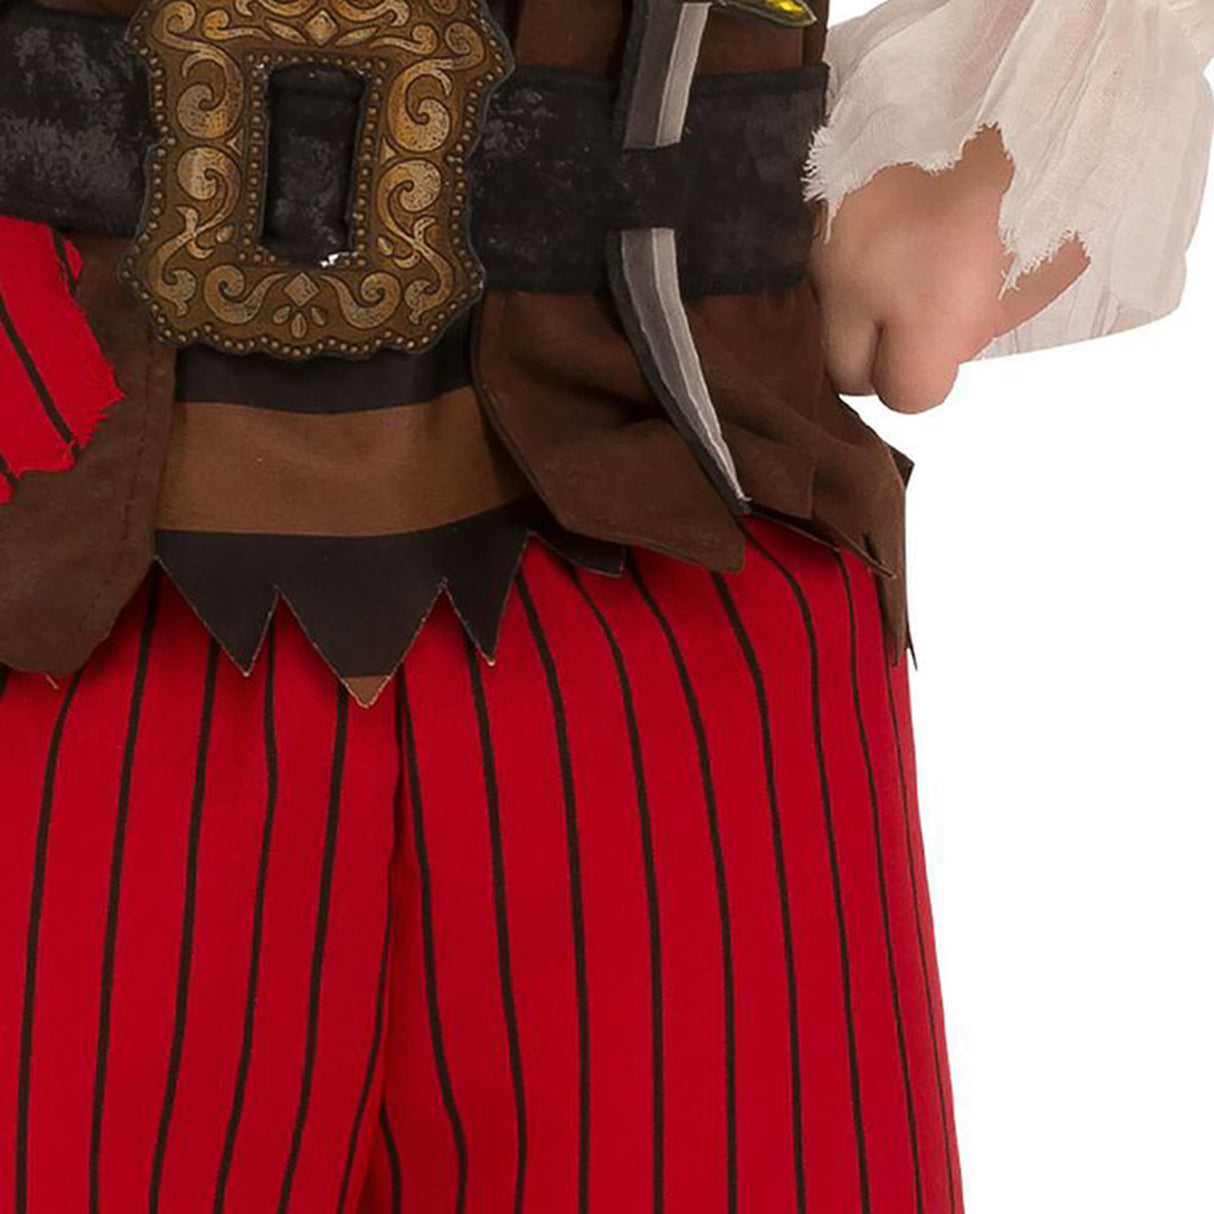 Rubies Pirate Matey Child's Costume (5-6 years)